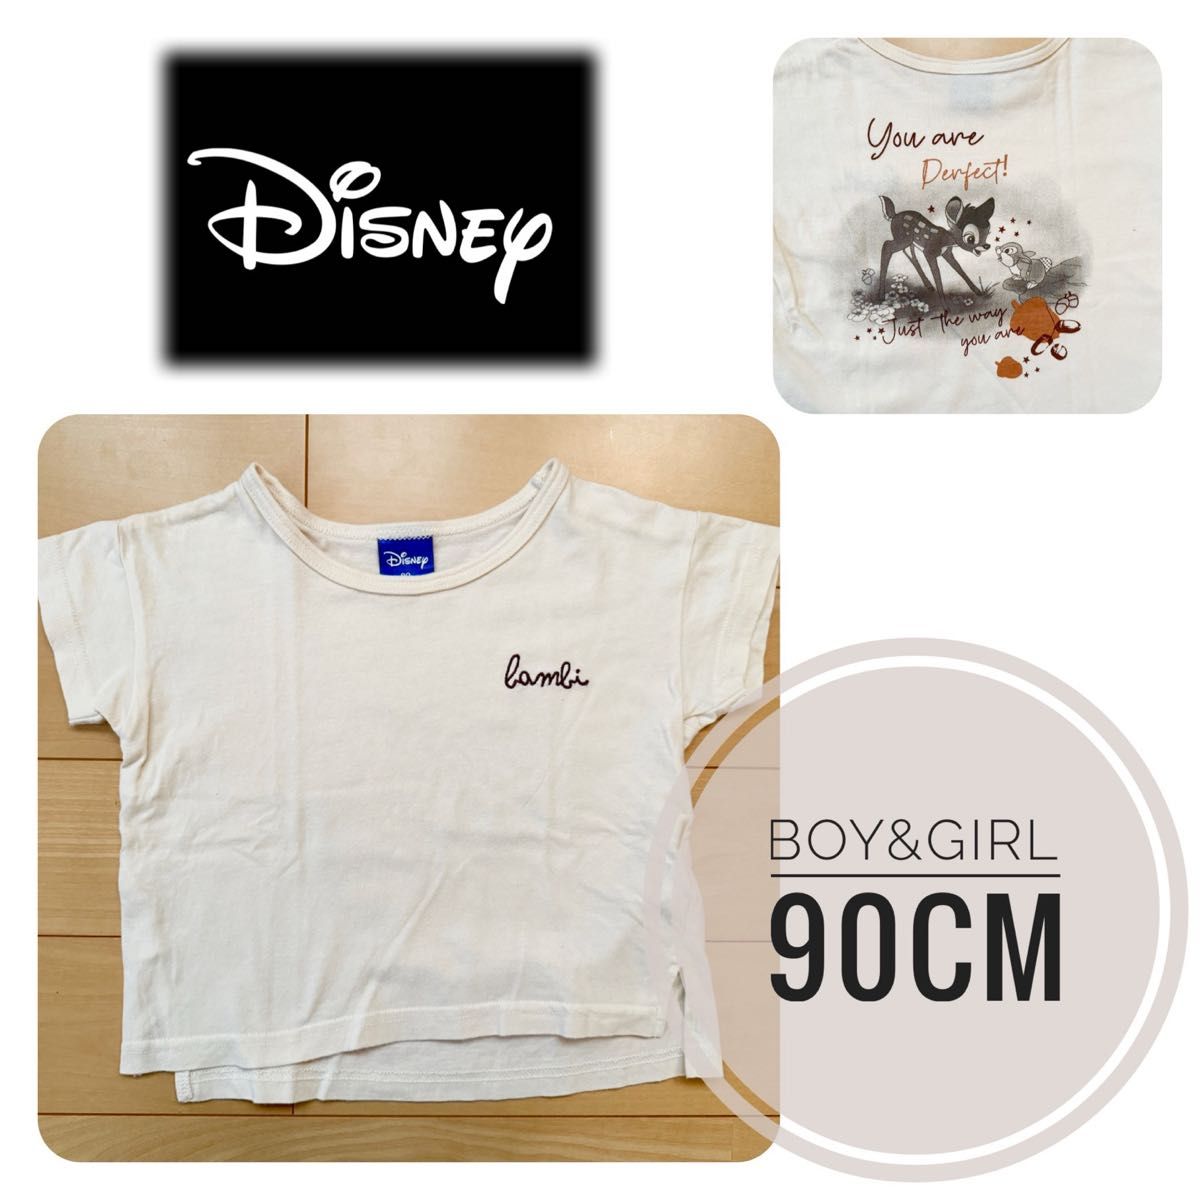 使えるプリント半袖Tシャツ・誰でも着やすいシンプルデザイン〈Disney・バンビ・90cm〉